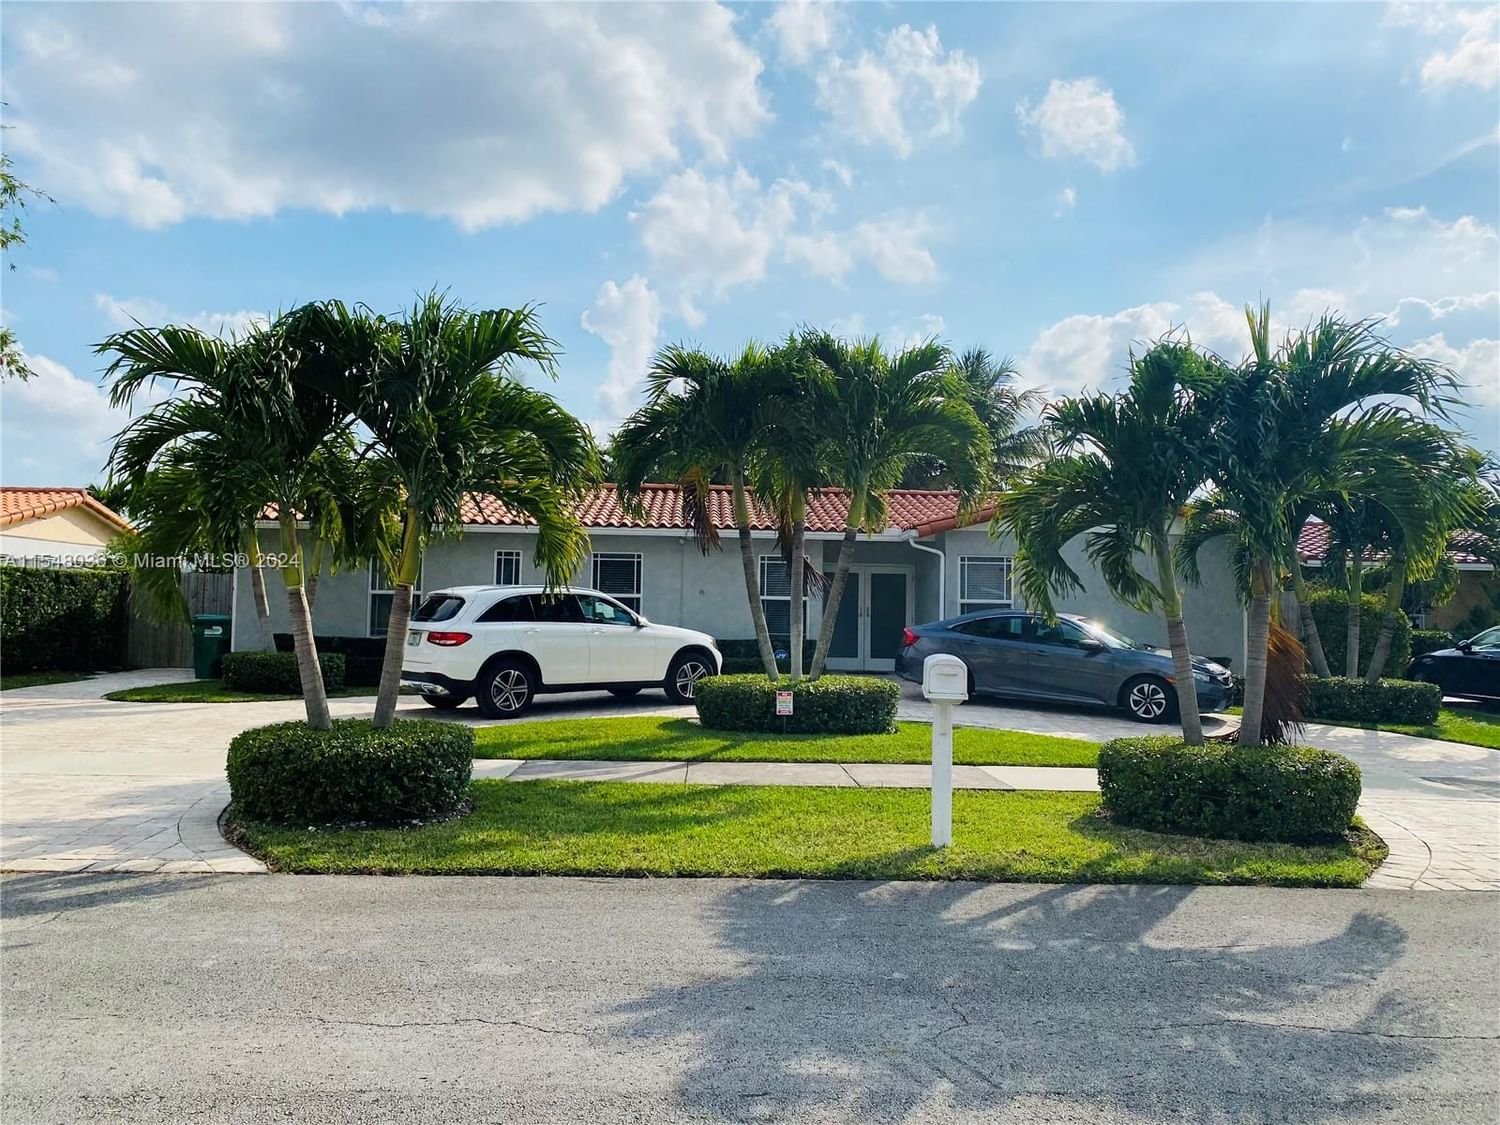 Real estate property located at 10800 67th Drive, Miami-Dade County, SNAPPER CREEK VILLAS, Miami, FL